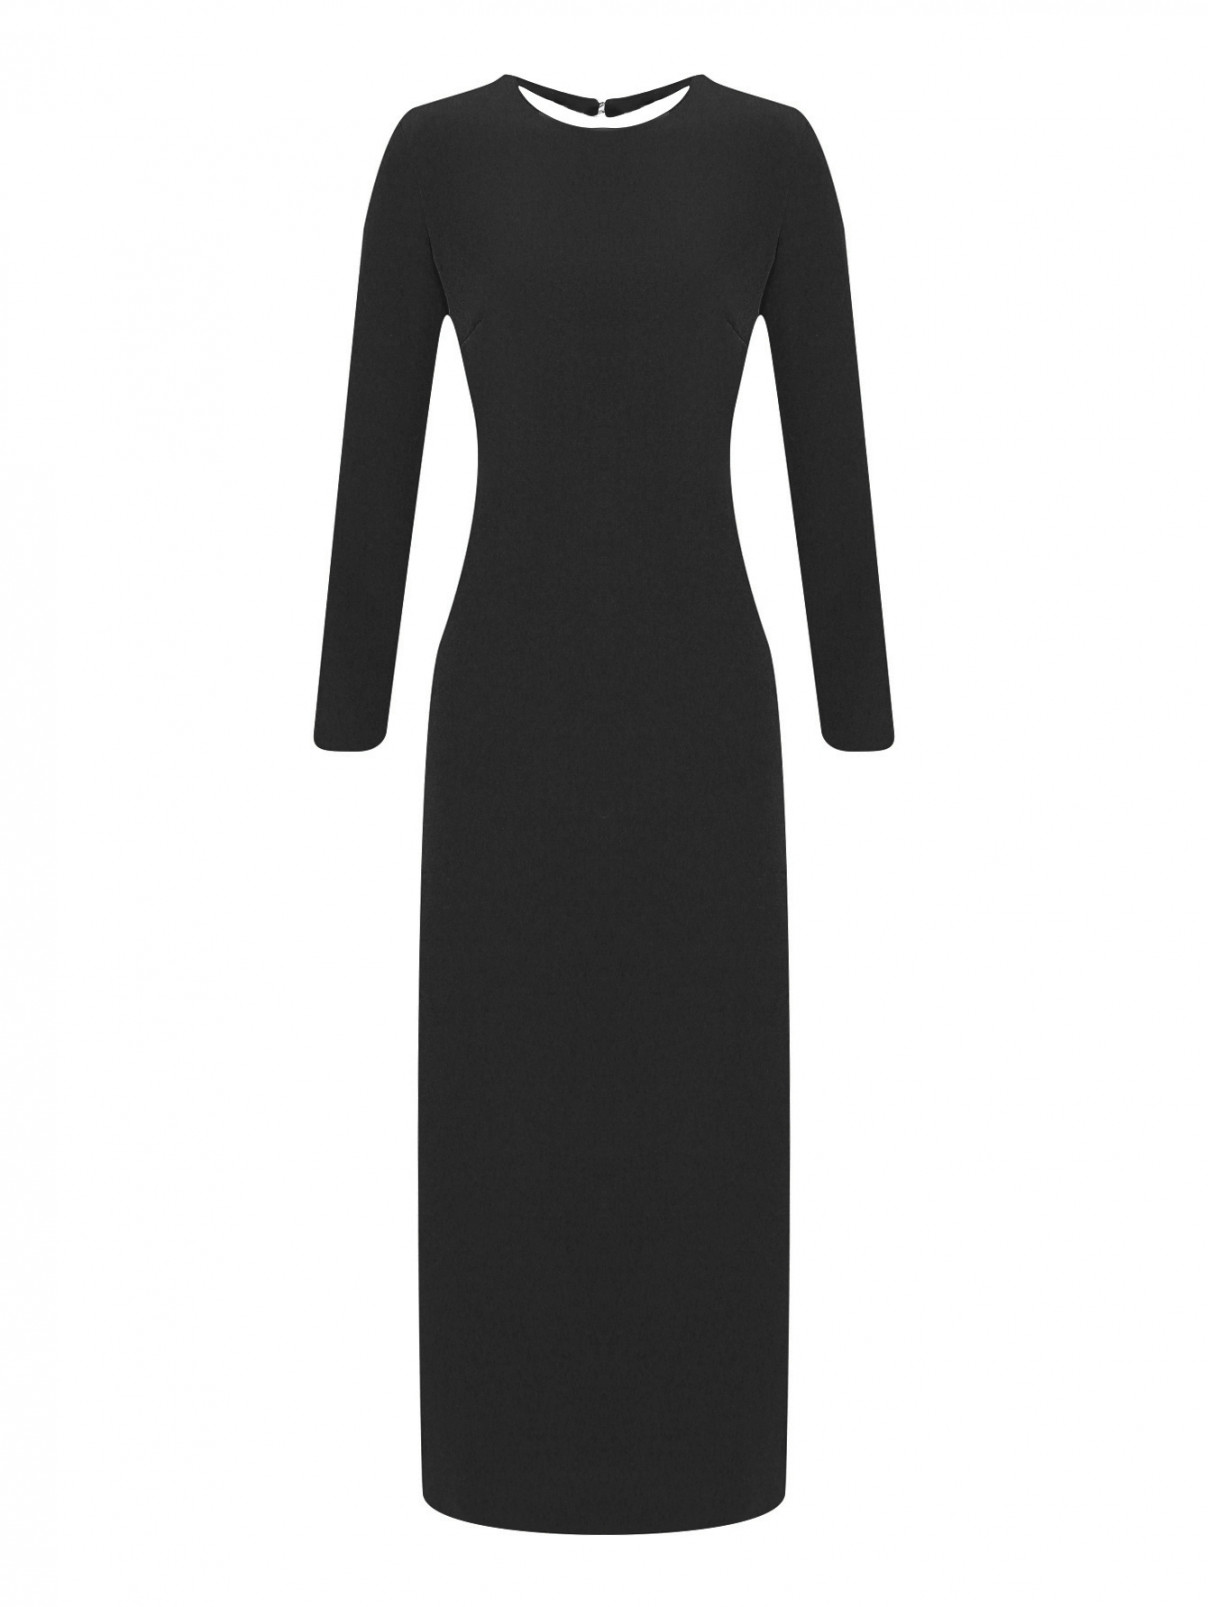 Платье-макси с вырезом на спине P.A.R.O.S.H.  –  Общий вид  – Цвет:  Черный